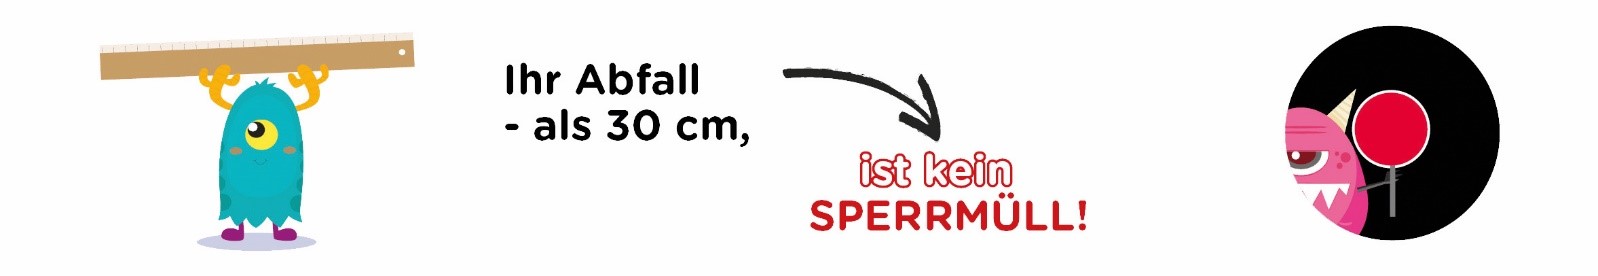 Sperrmull-Logo-1.jpg